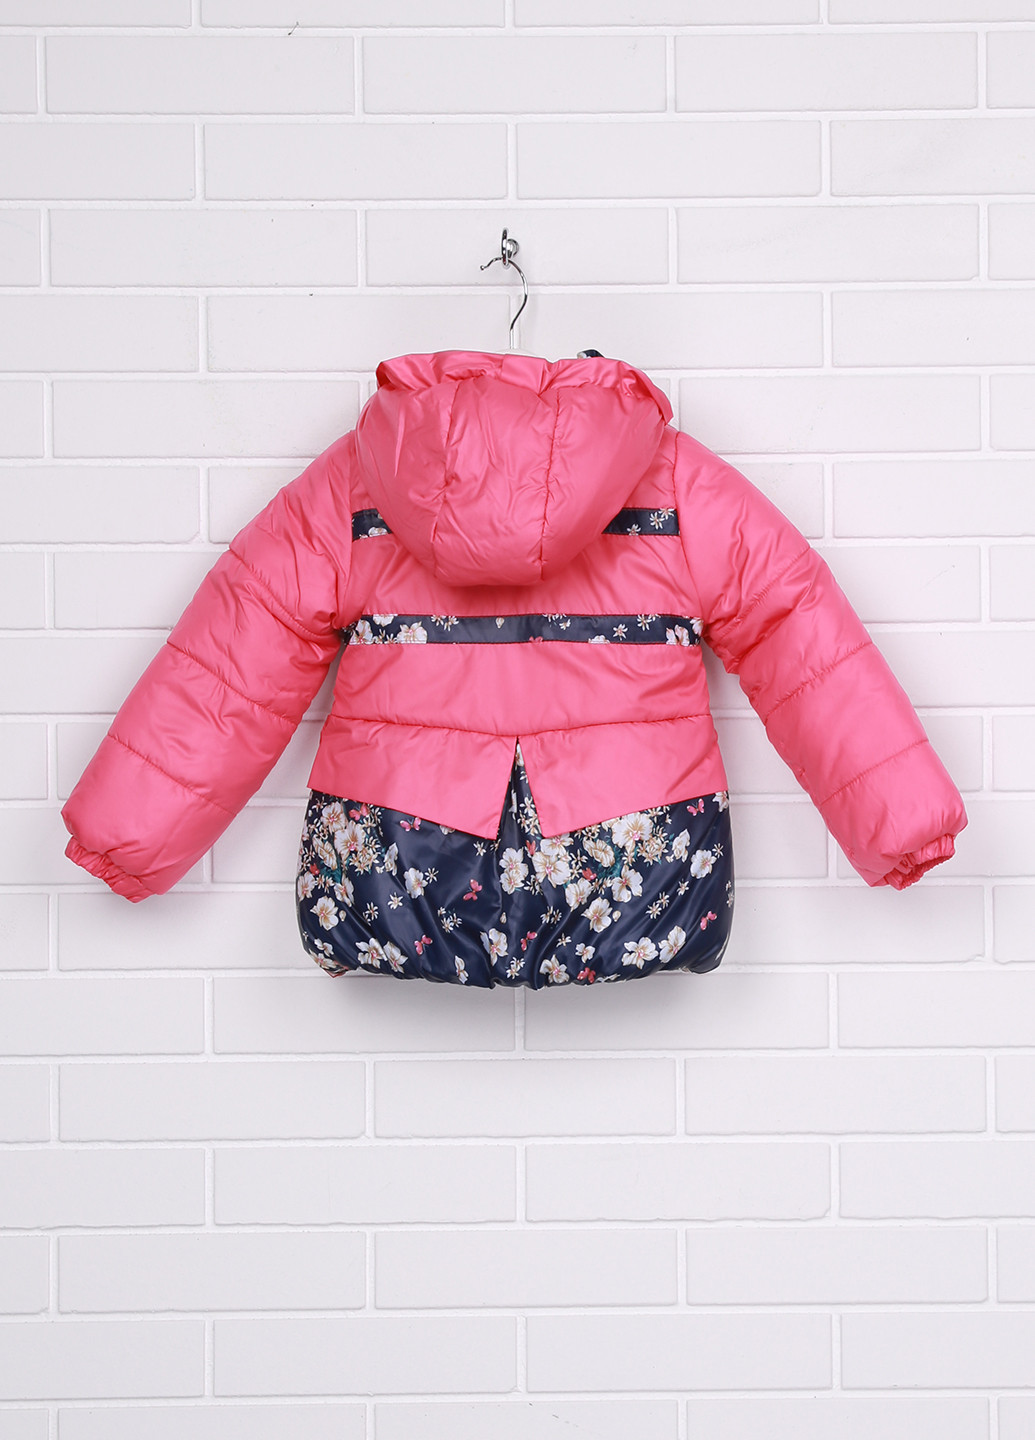 Темно-розовая зимняя куртка Одягайко